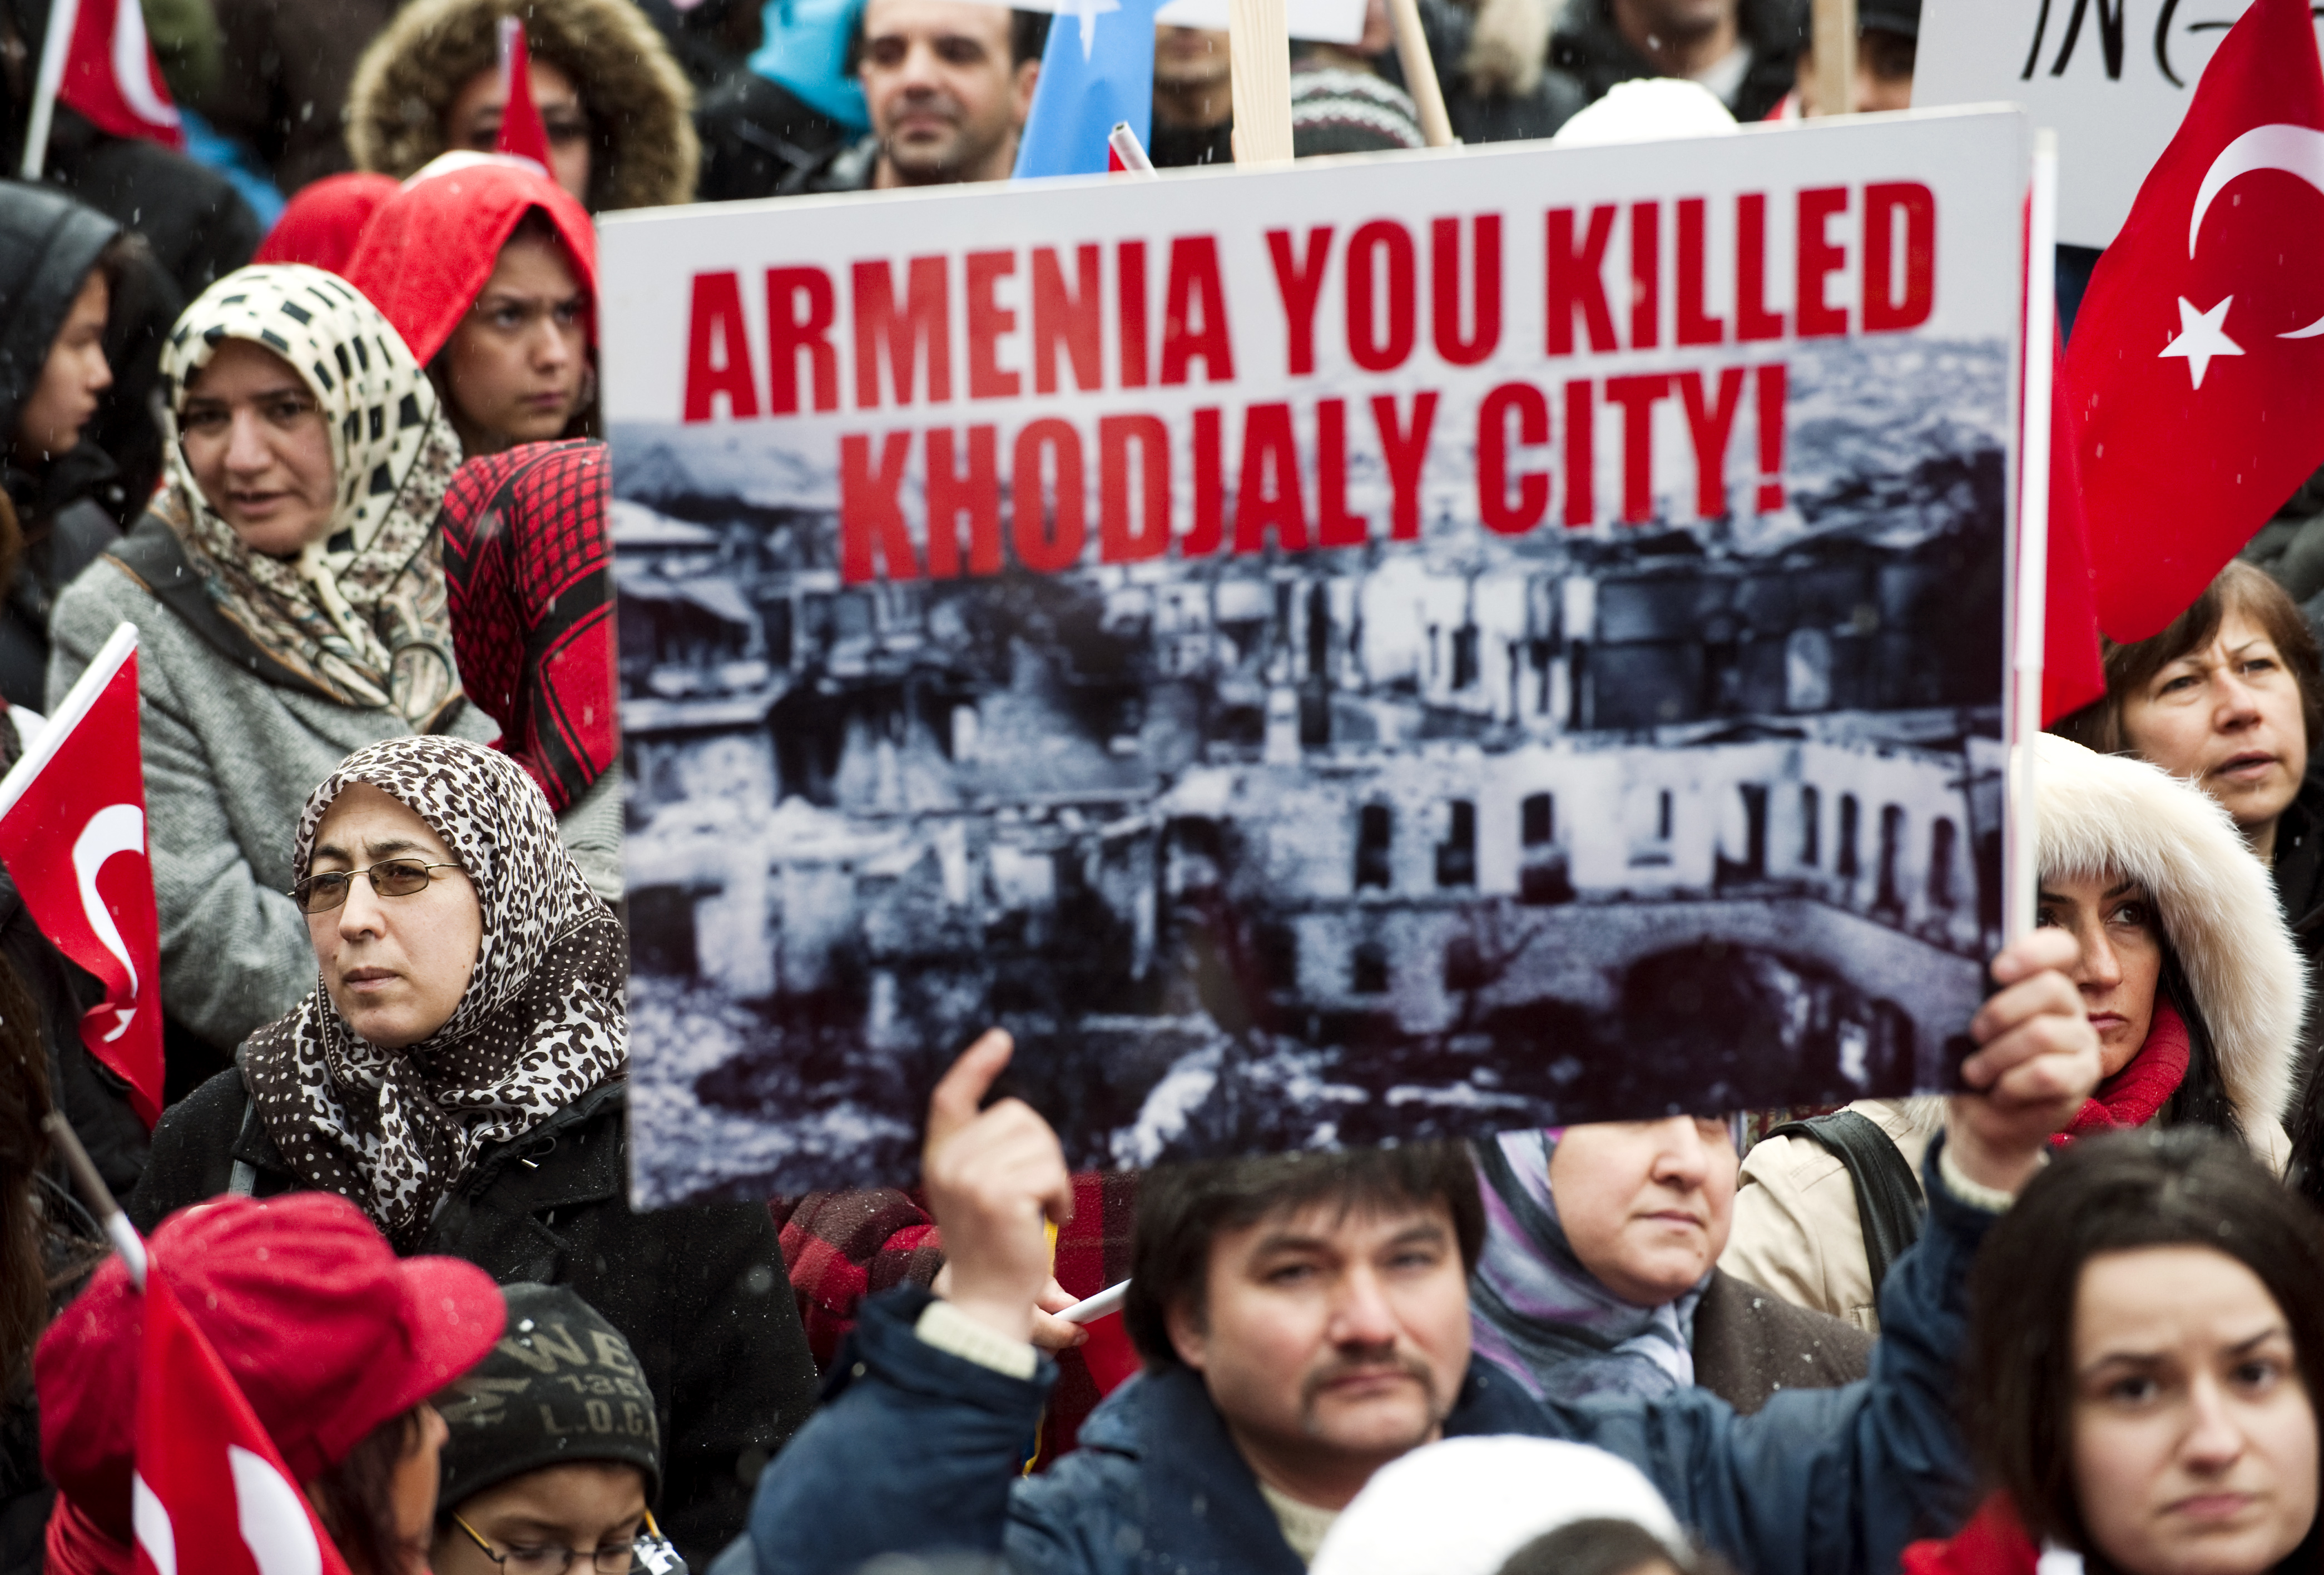 Folkmord, Riksdagen, turkiet, Armenien